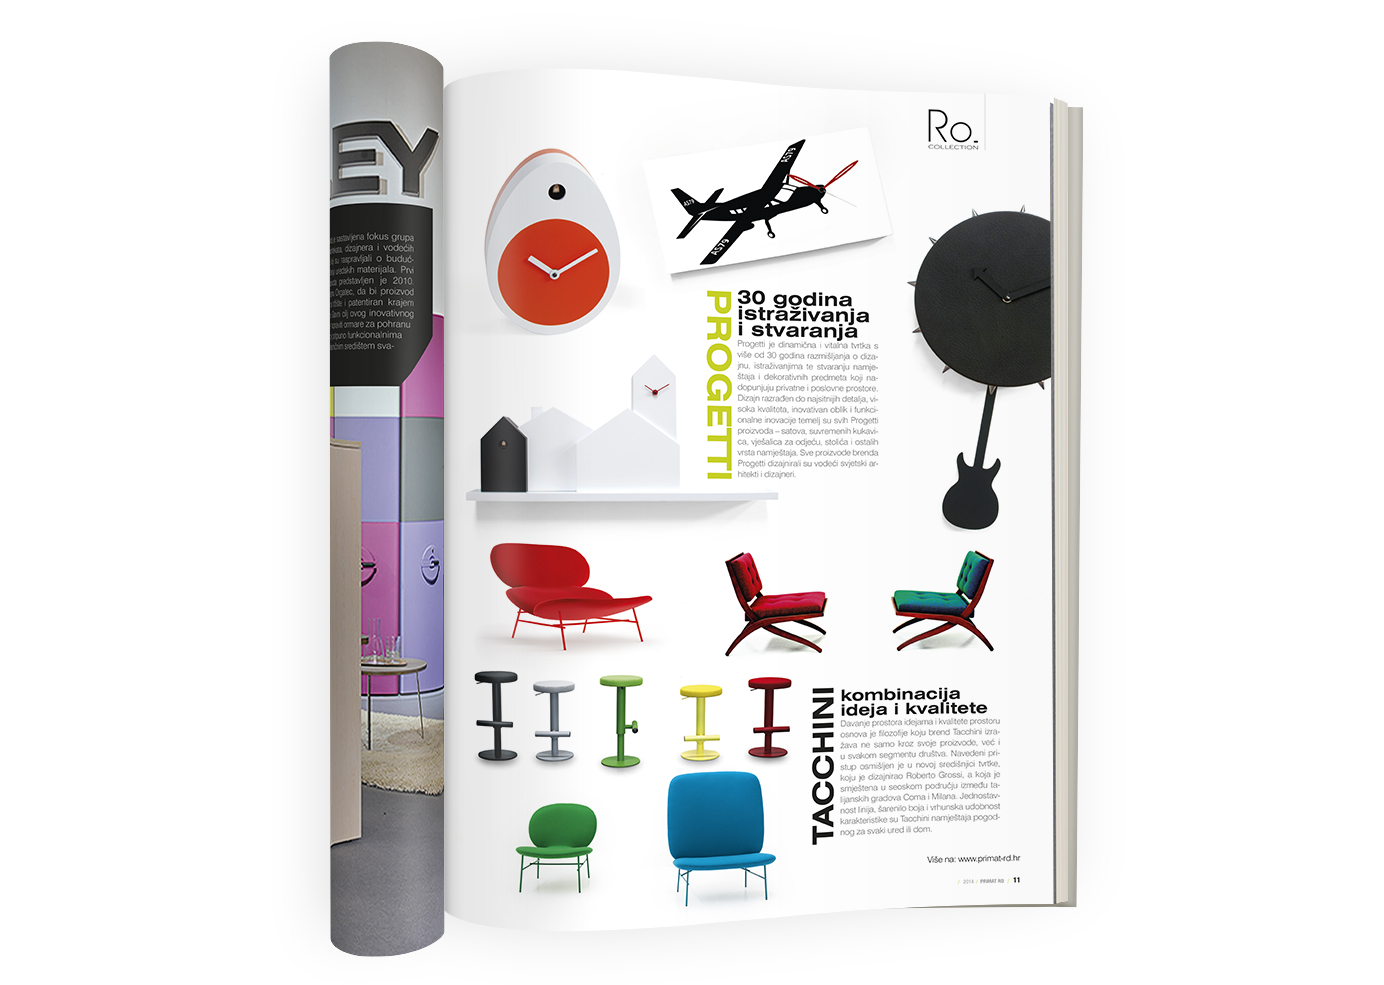 Corporate Design magazine RDesign | Primat RD | BERNARDIĆ STUDIO creative production